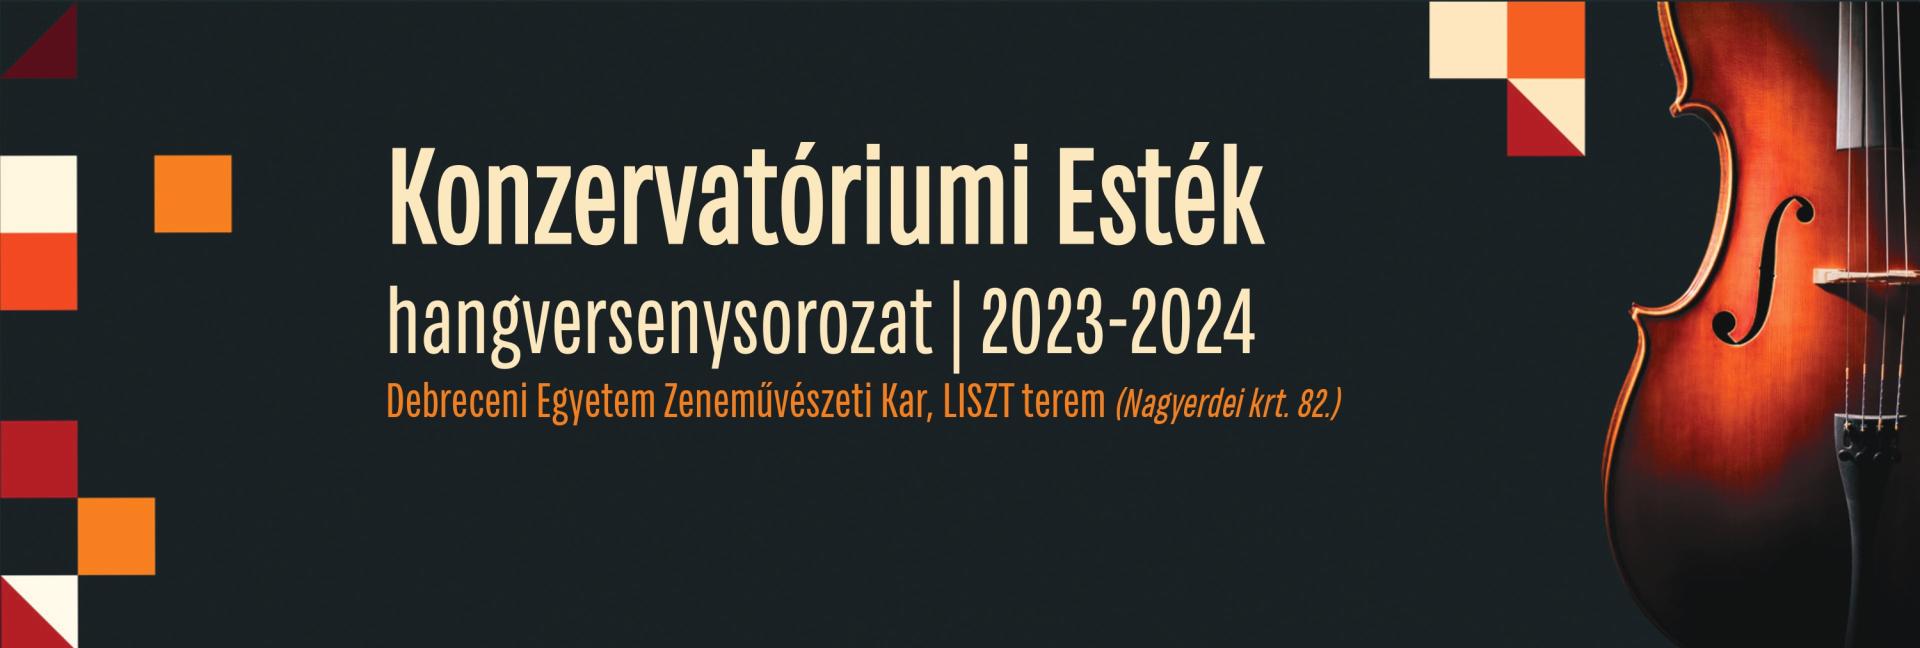 Konzervatóriumi Esték hangversenysorozat 2023/2024